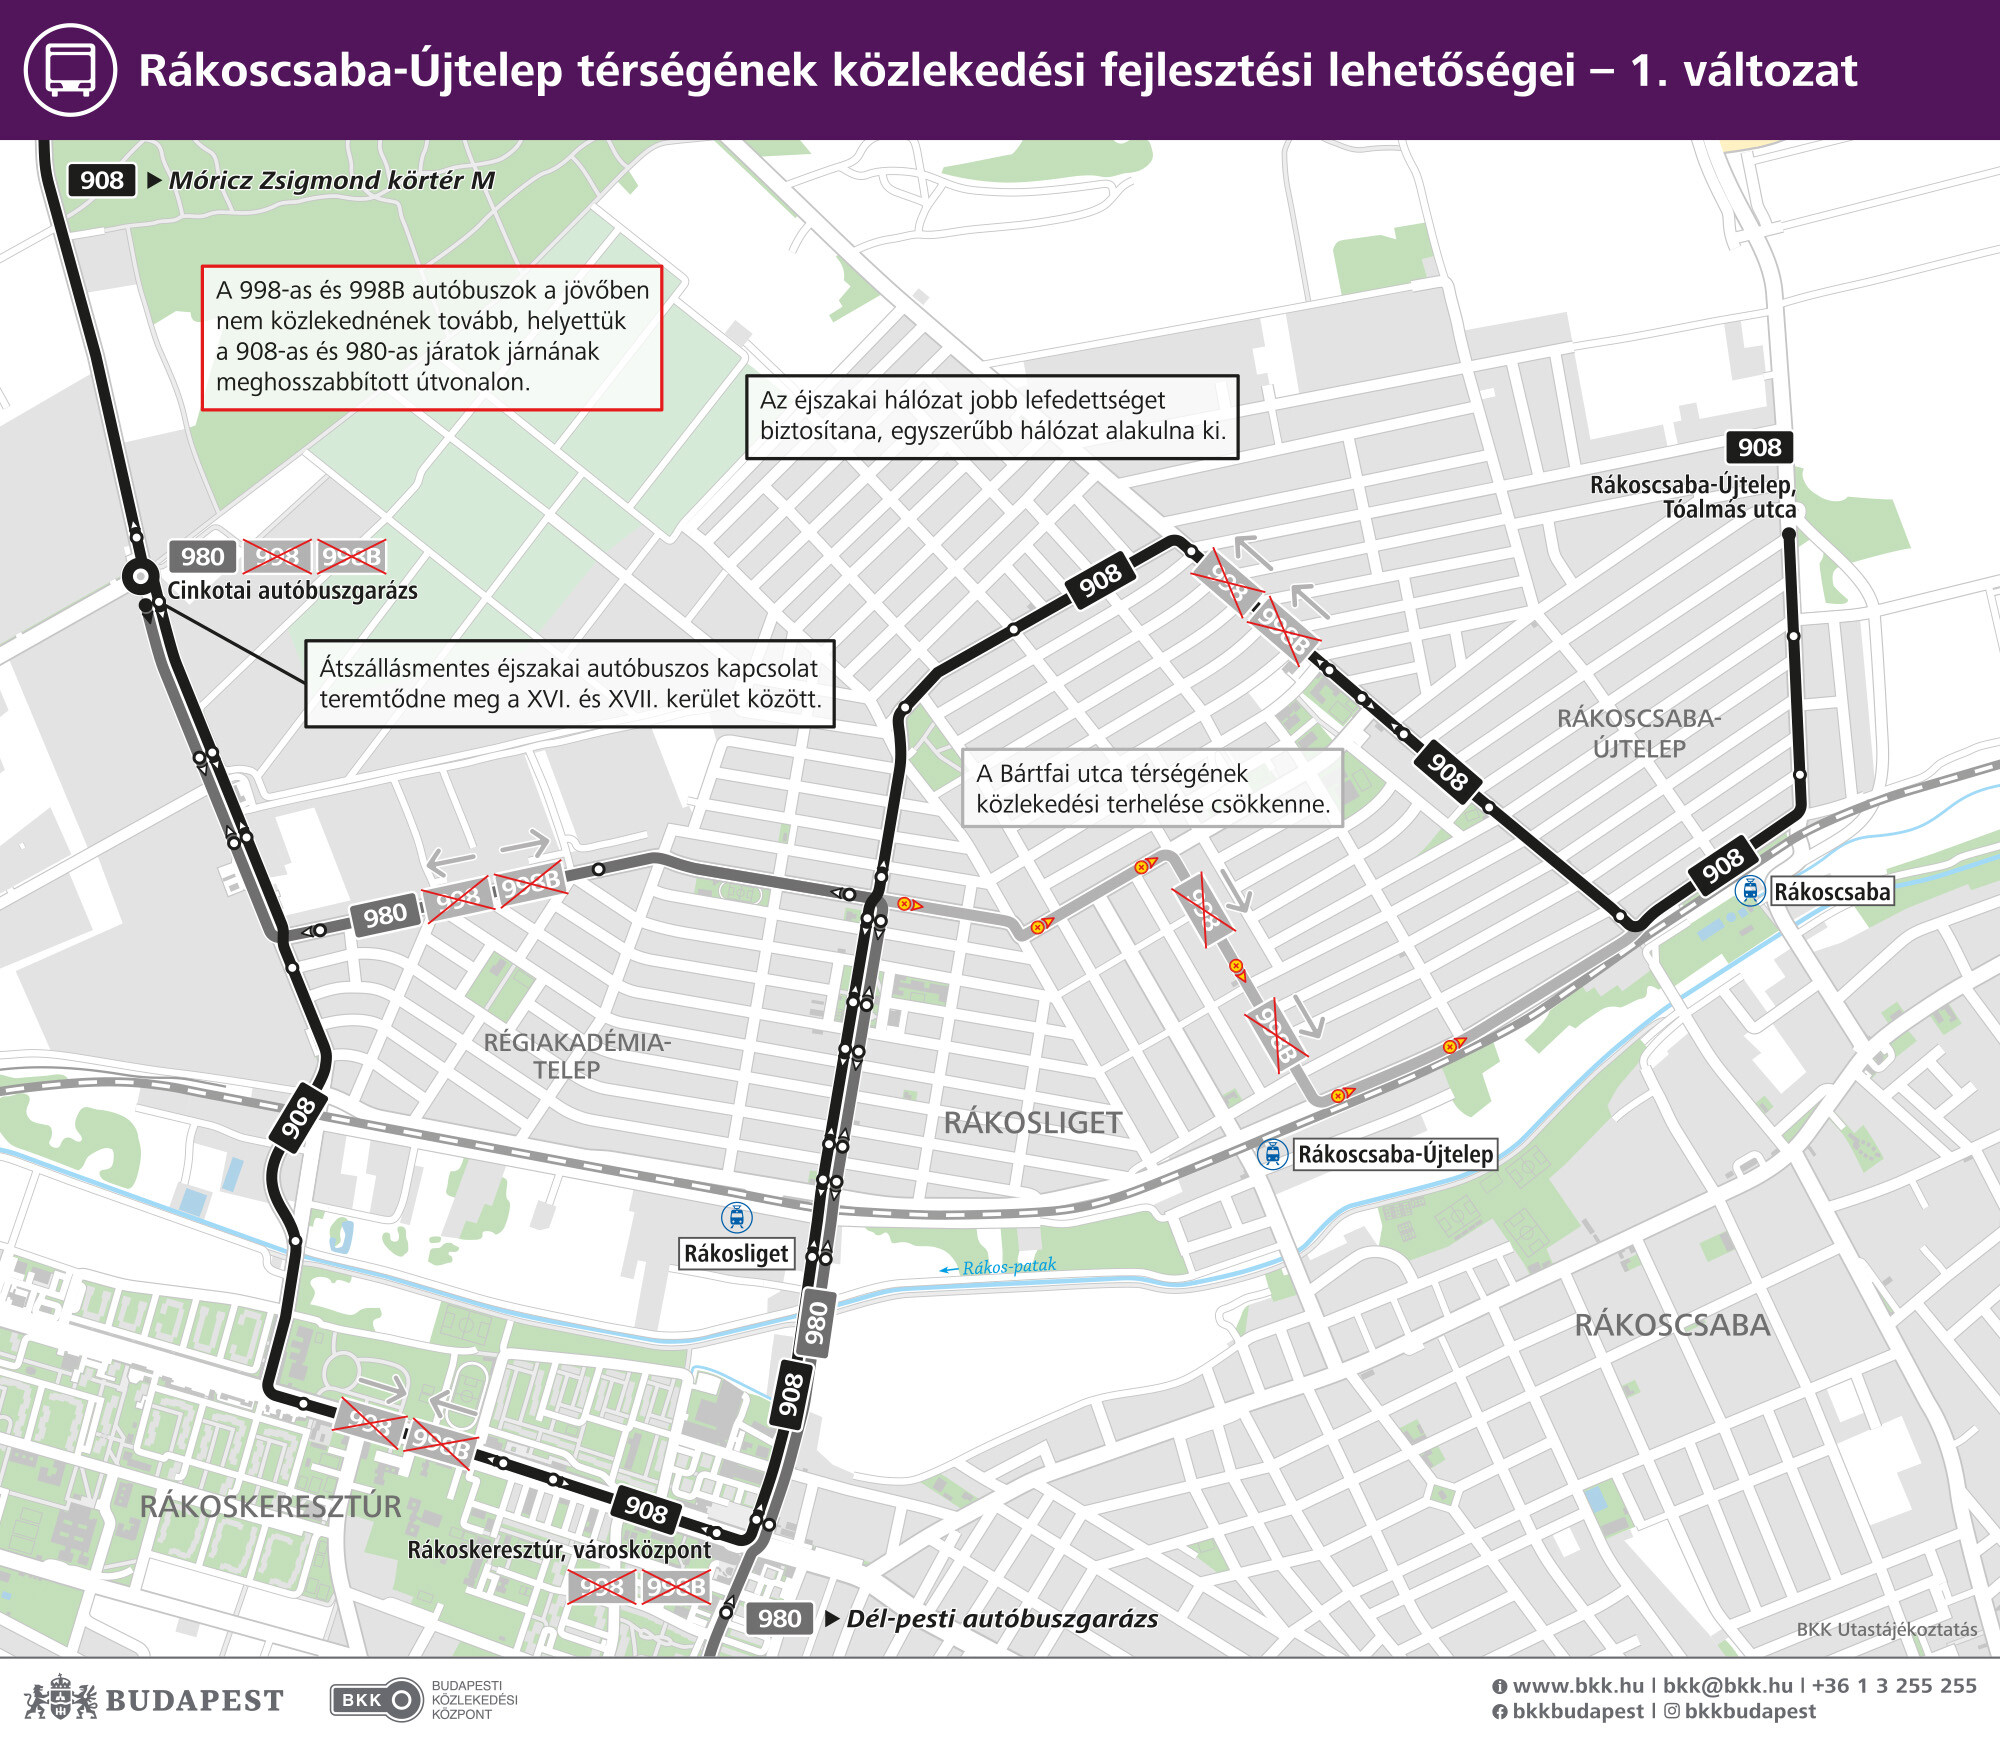 rákoscsaba-újtelep térségének közlekedésfejlesztési lehetőségei térképen